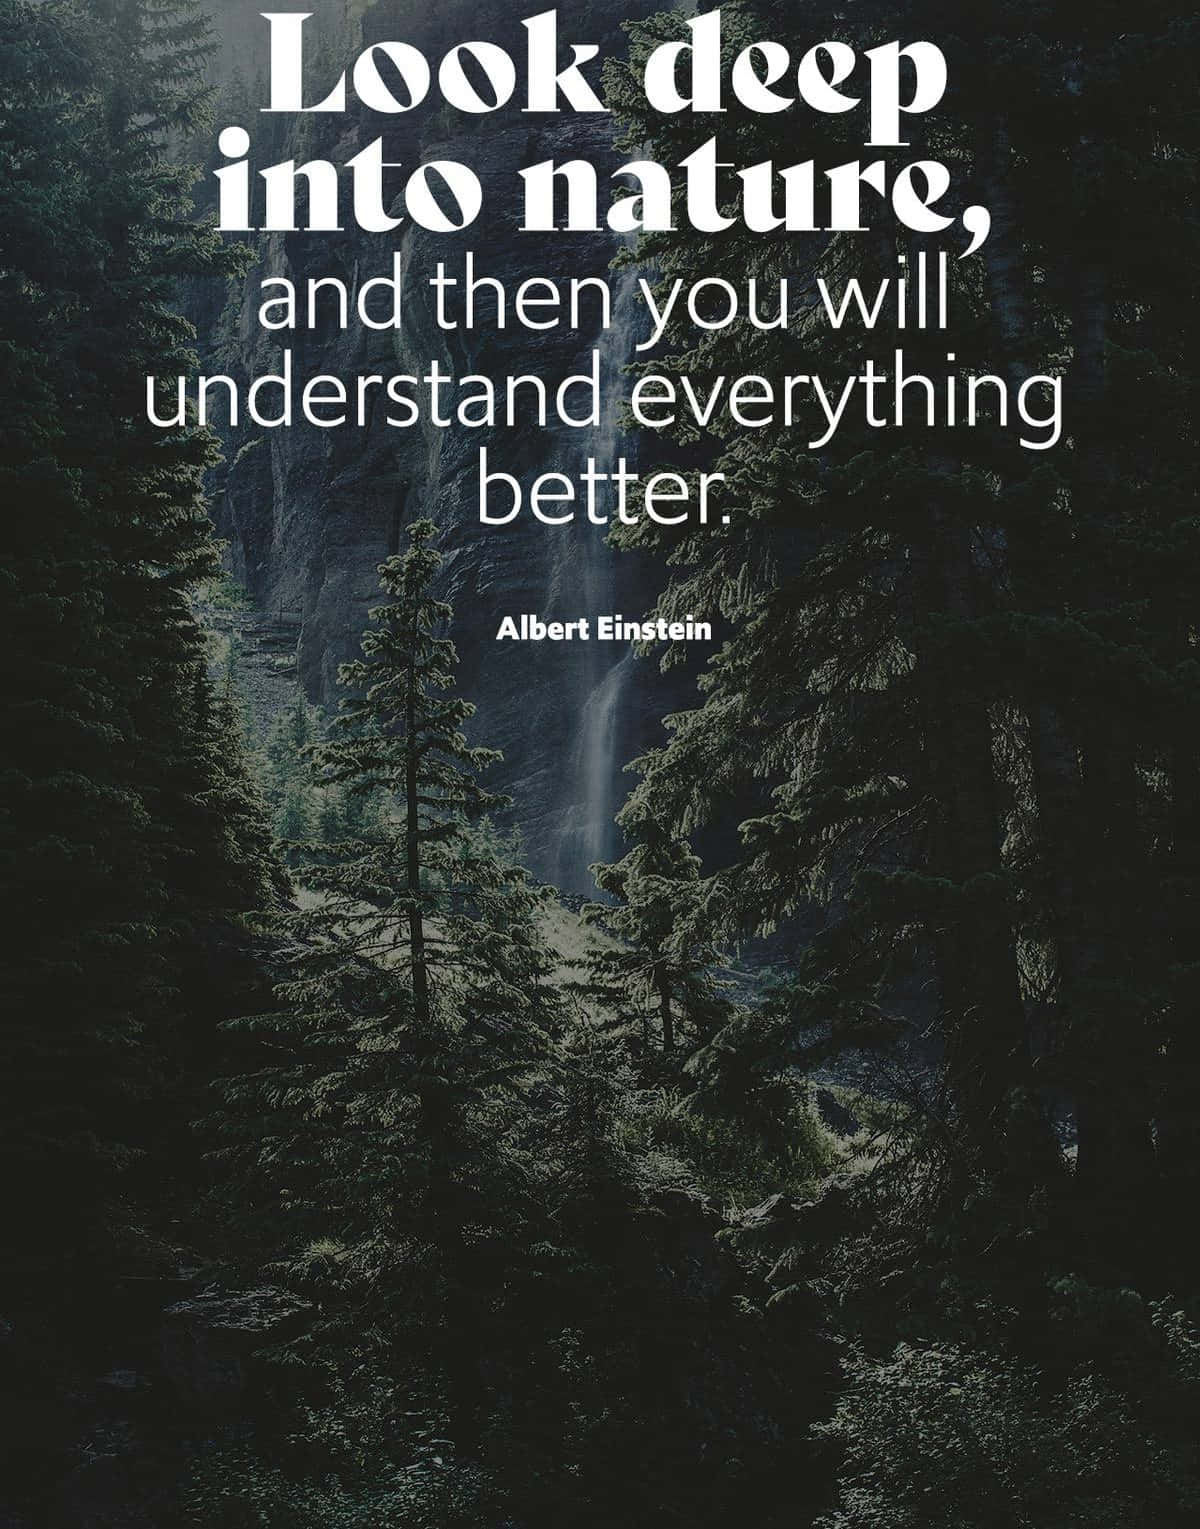 Einstein Nature Quote Forest Waterfall Wallpaper